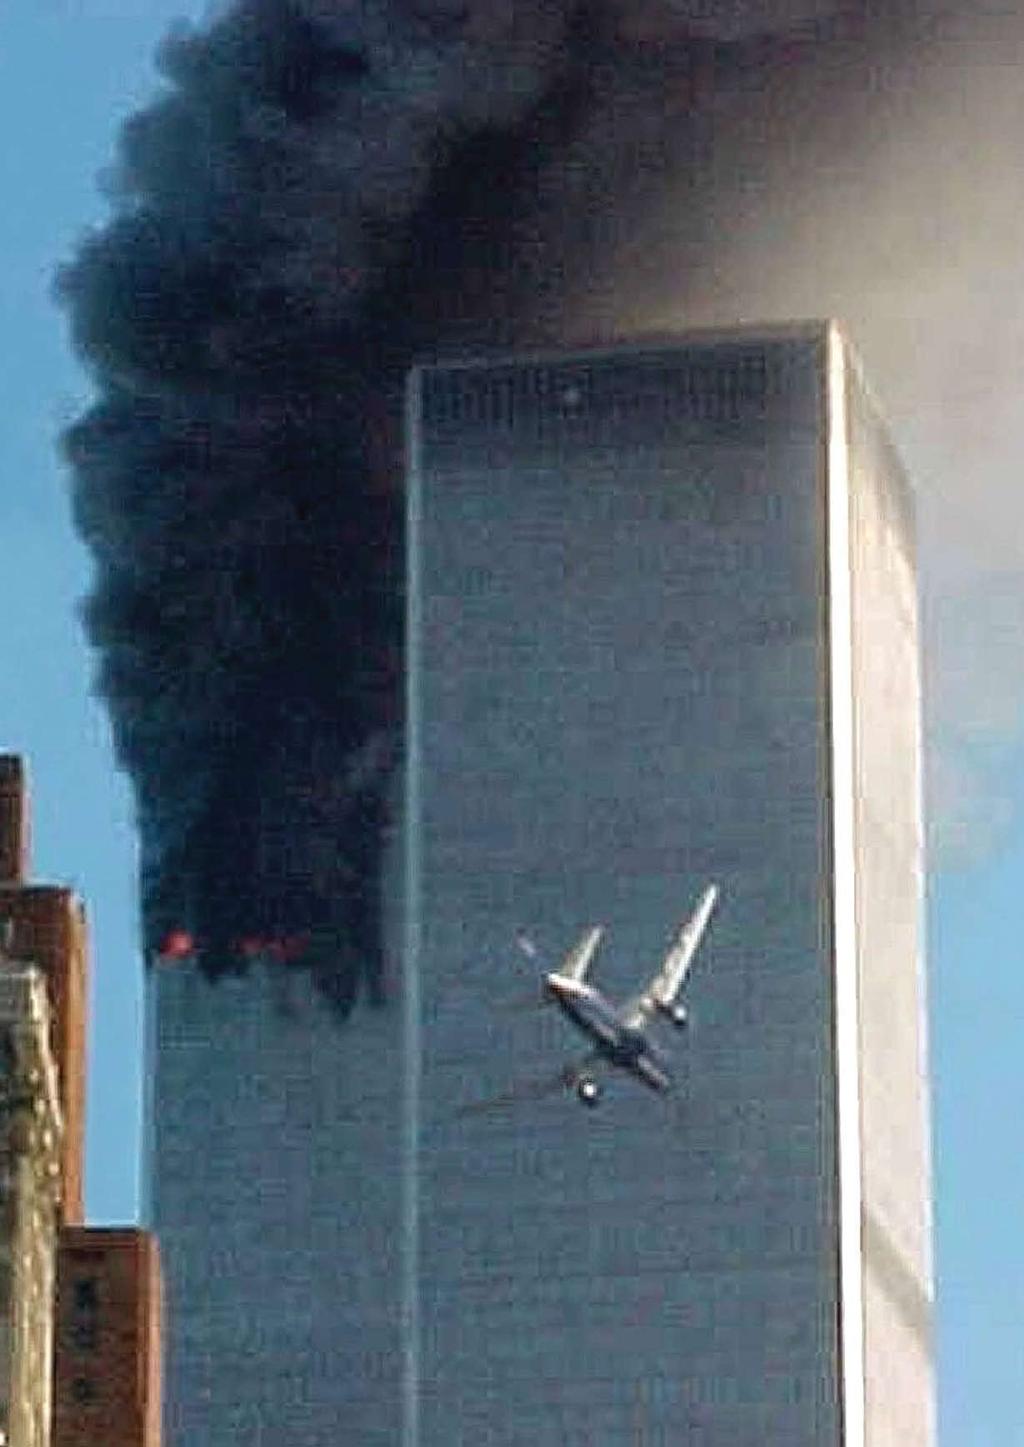 מטוס נוסעים חטוף בידי מחבלי אל-קאעידה מתרסק לתוך המגדל הדרומי של מגדלי התאומים, 11 בספטמבר 2001, במתקפת הטרור החמורה ביותר